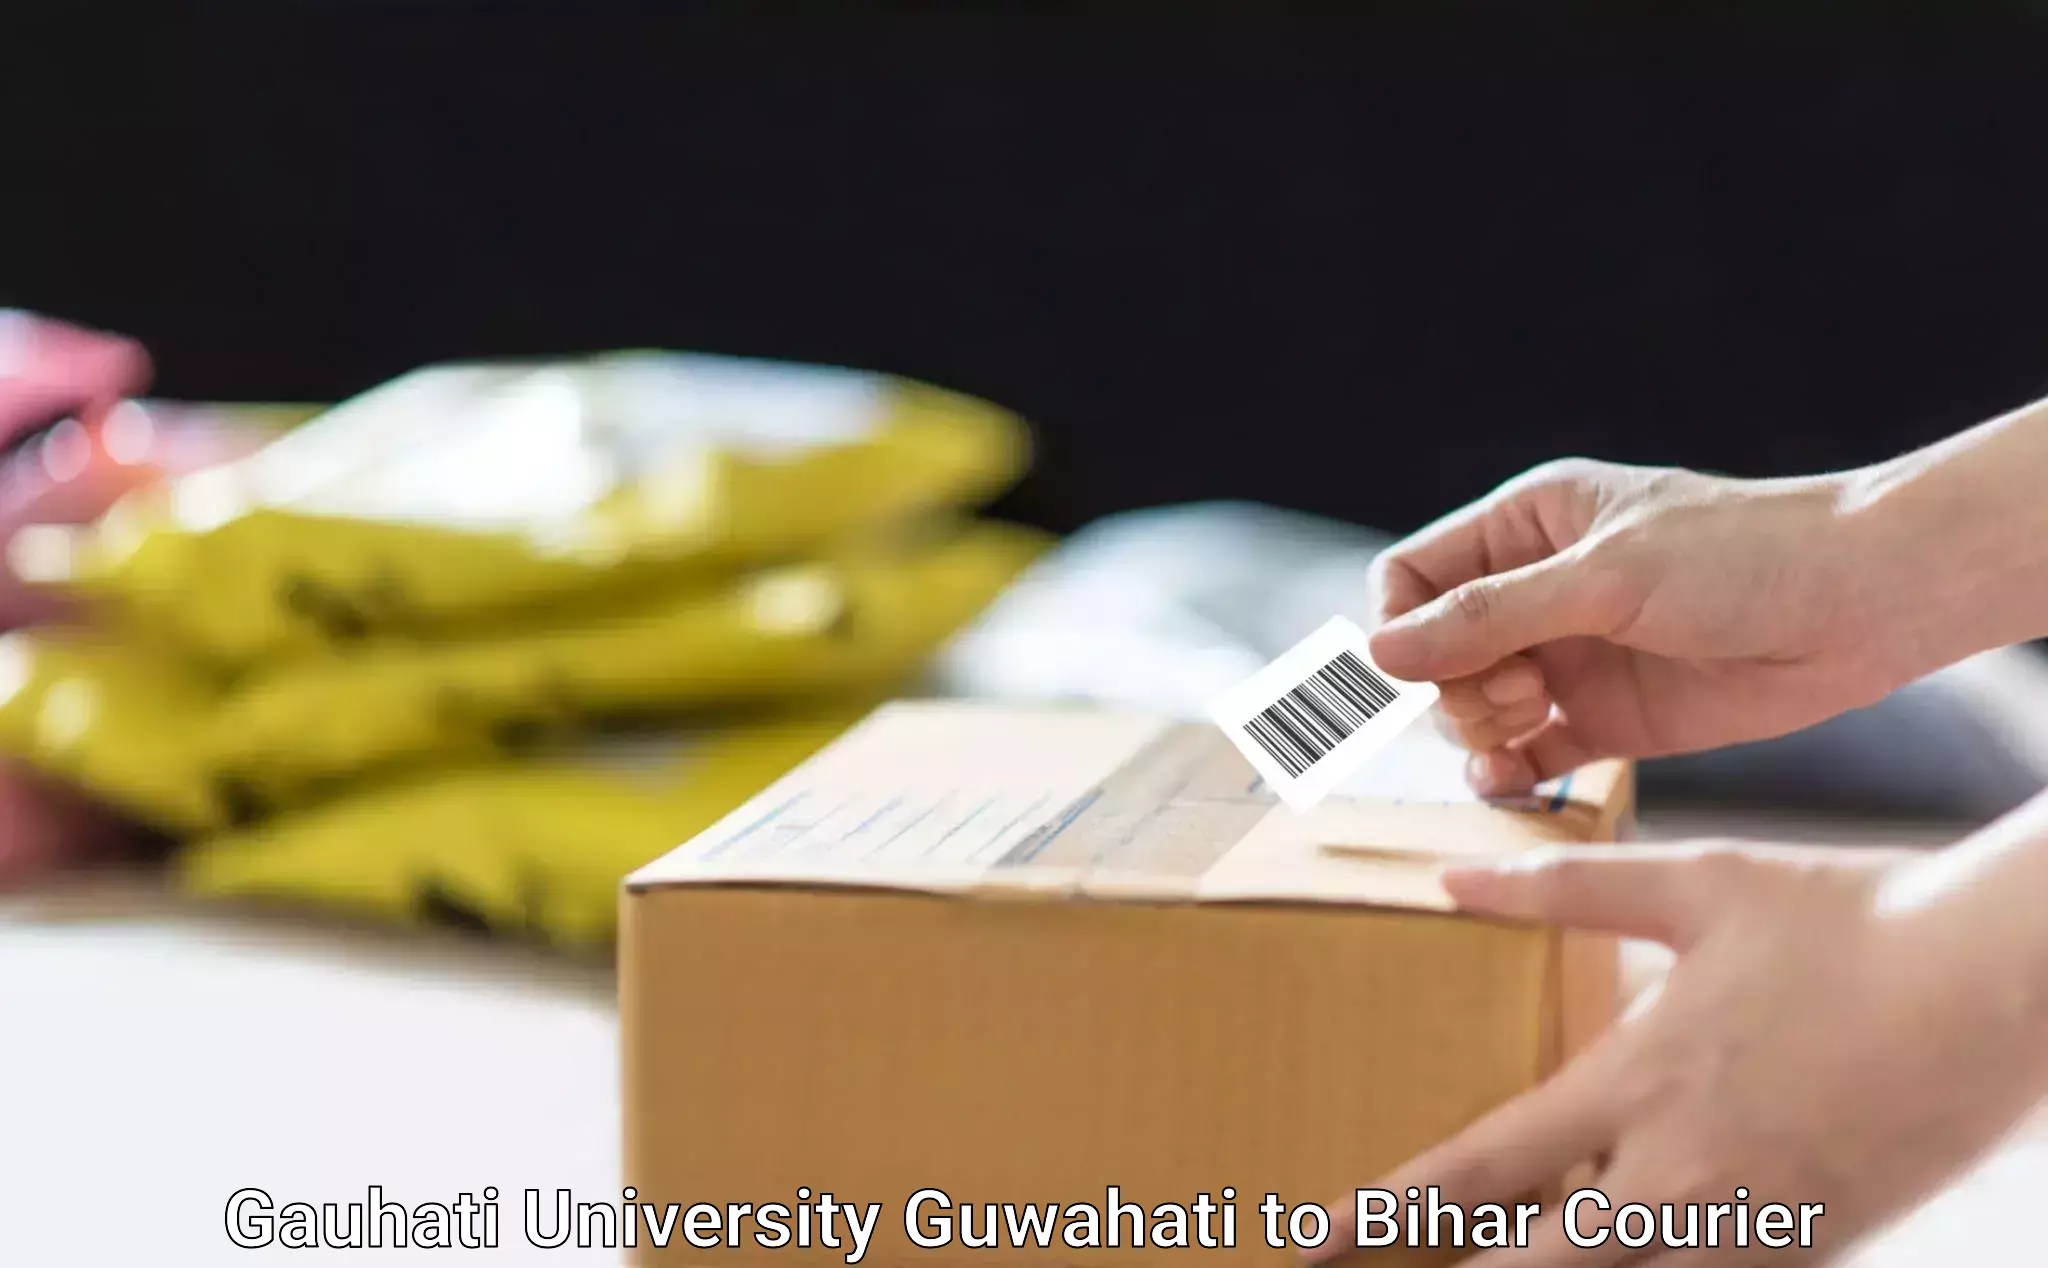 Pharmaceutical courier Gauhati University Guwahati to Mahaddipur